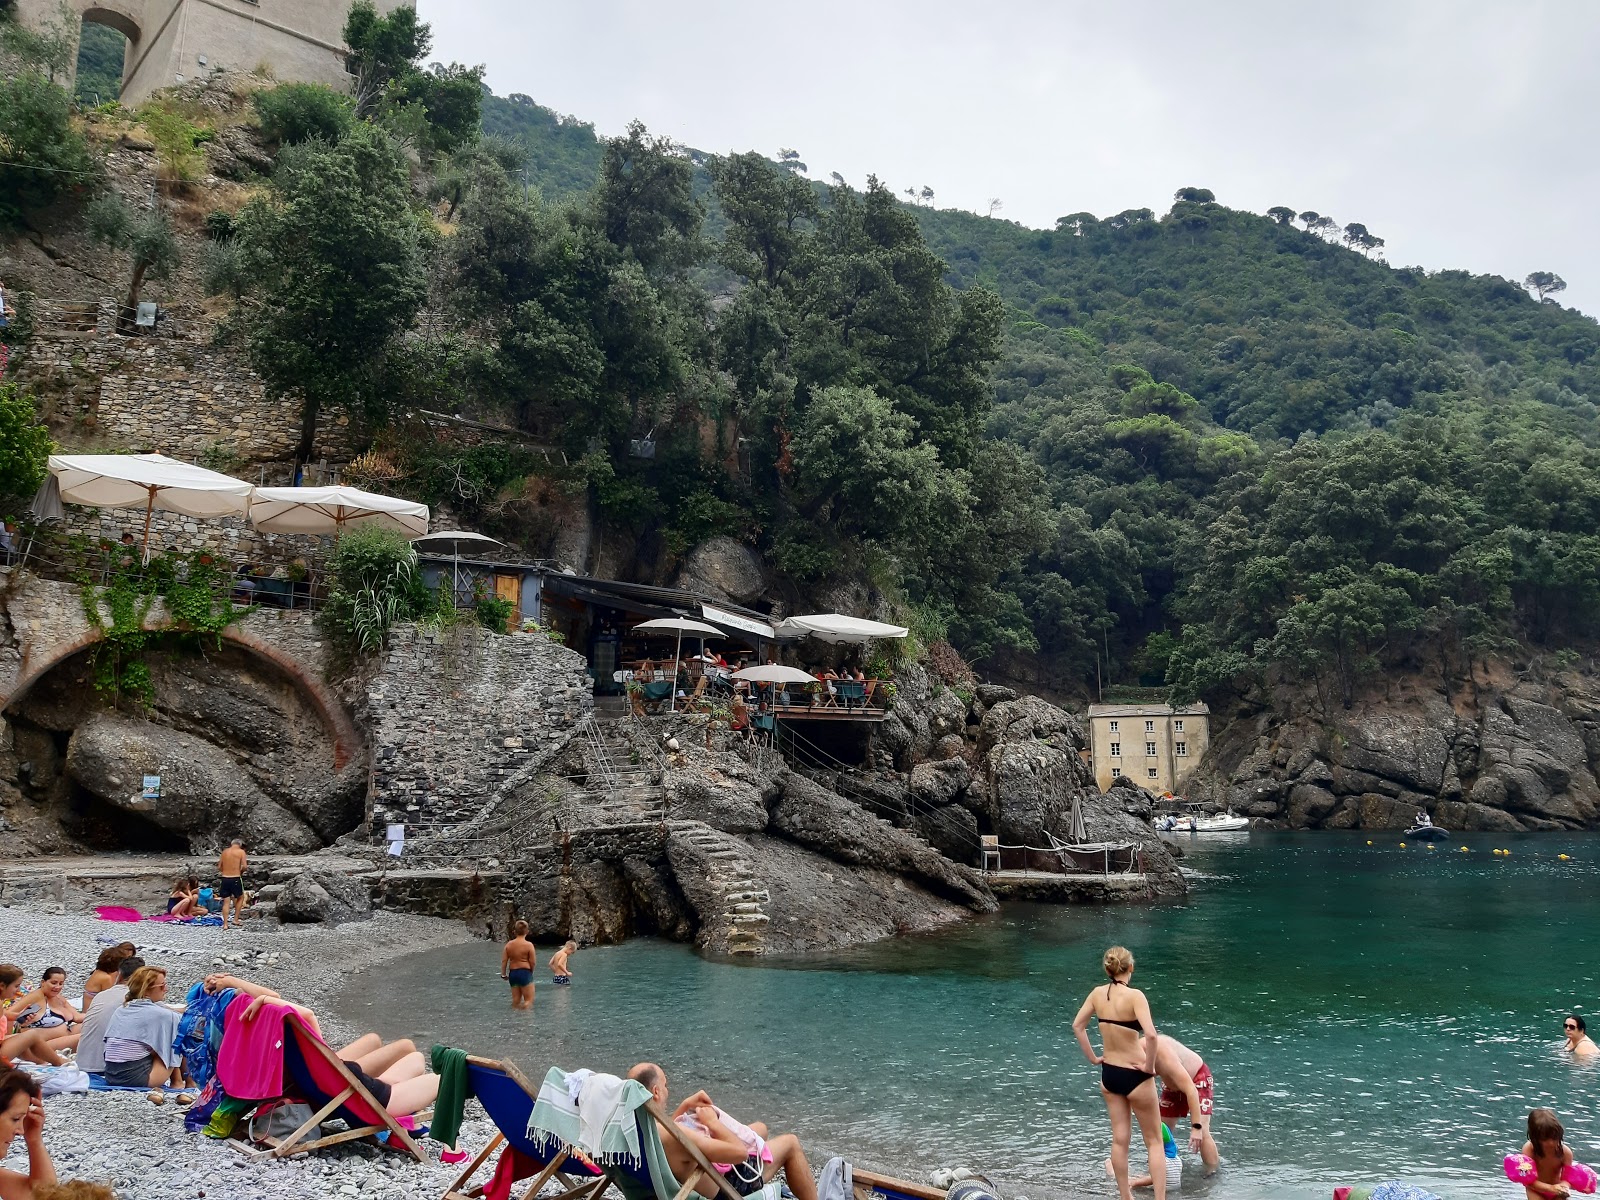 Spiaggia San Fruttuoso的照片 背靠悬崖